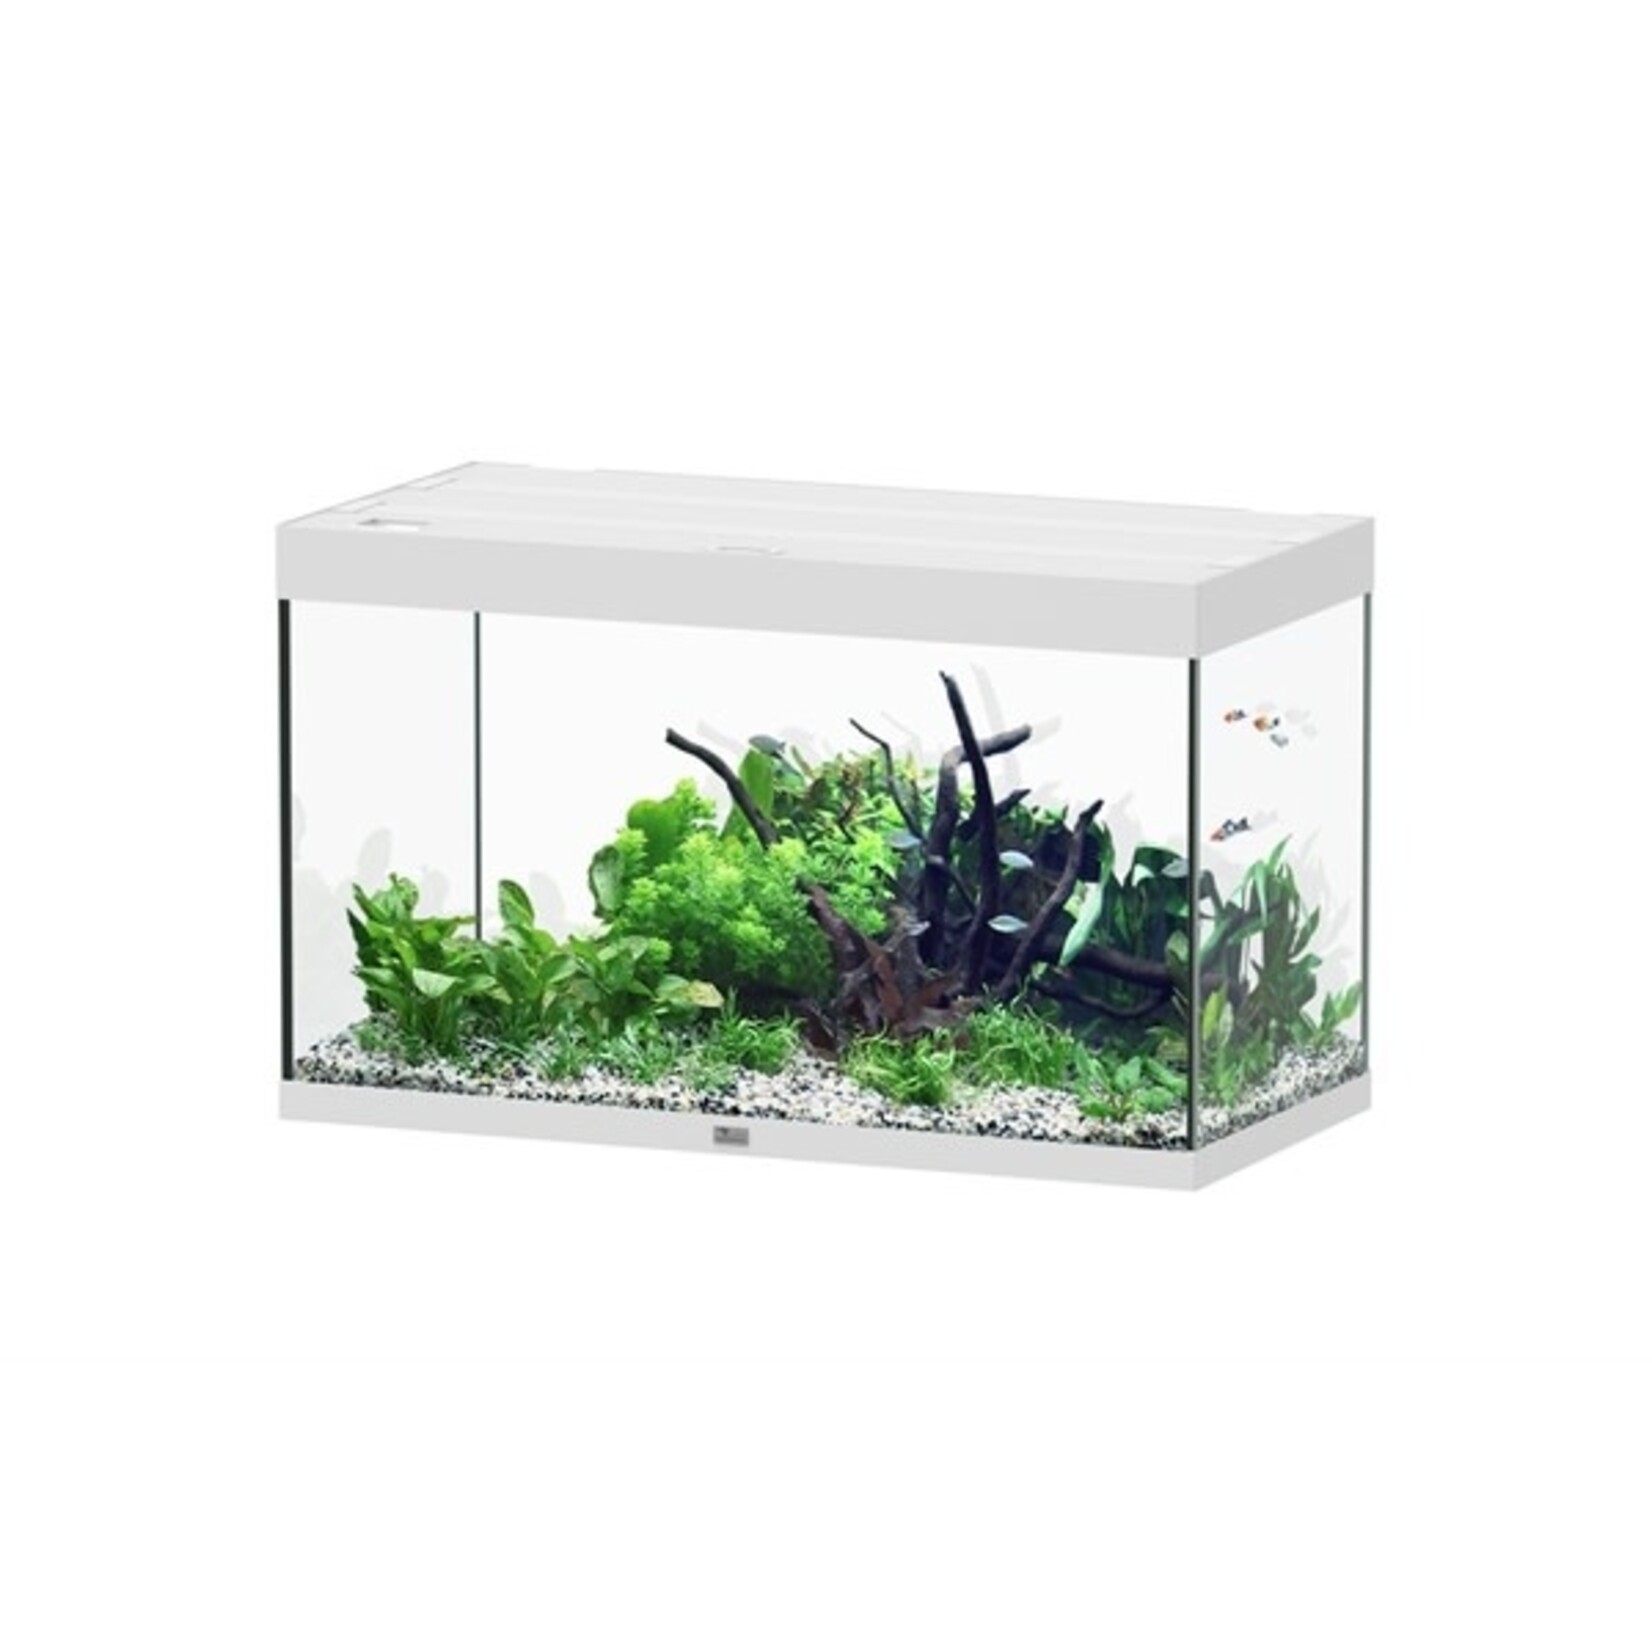 Aquatlantis Aquarium sublime 100x50 cm wit hg-064